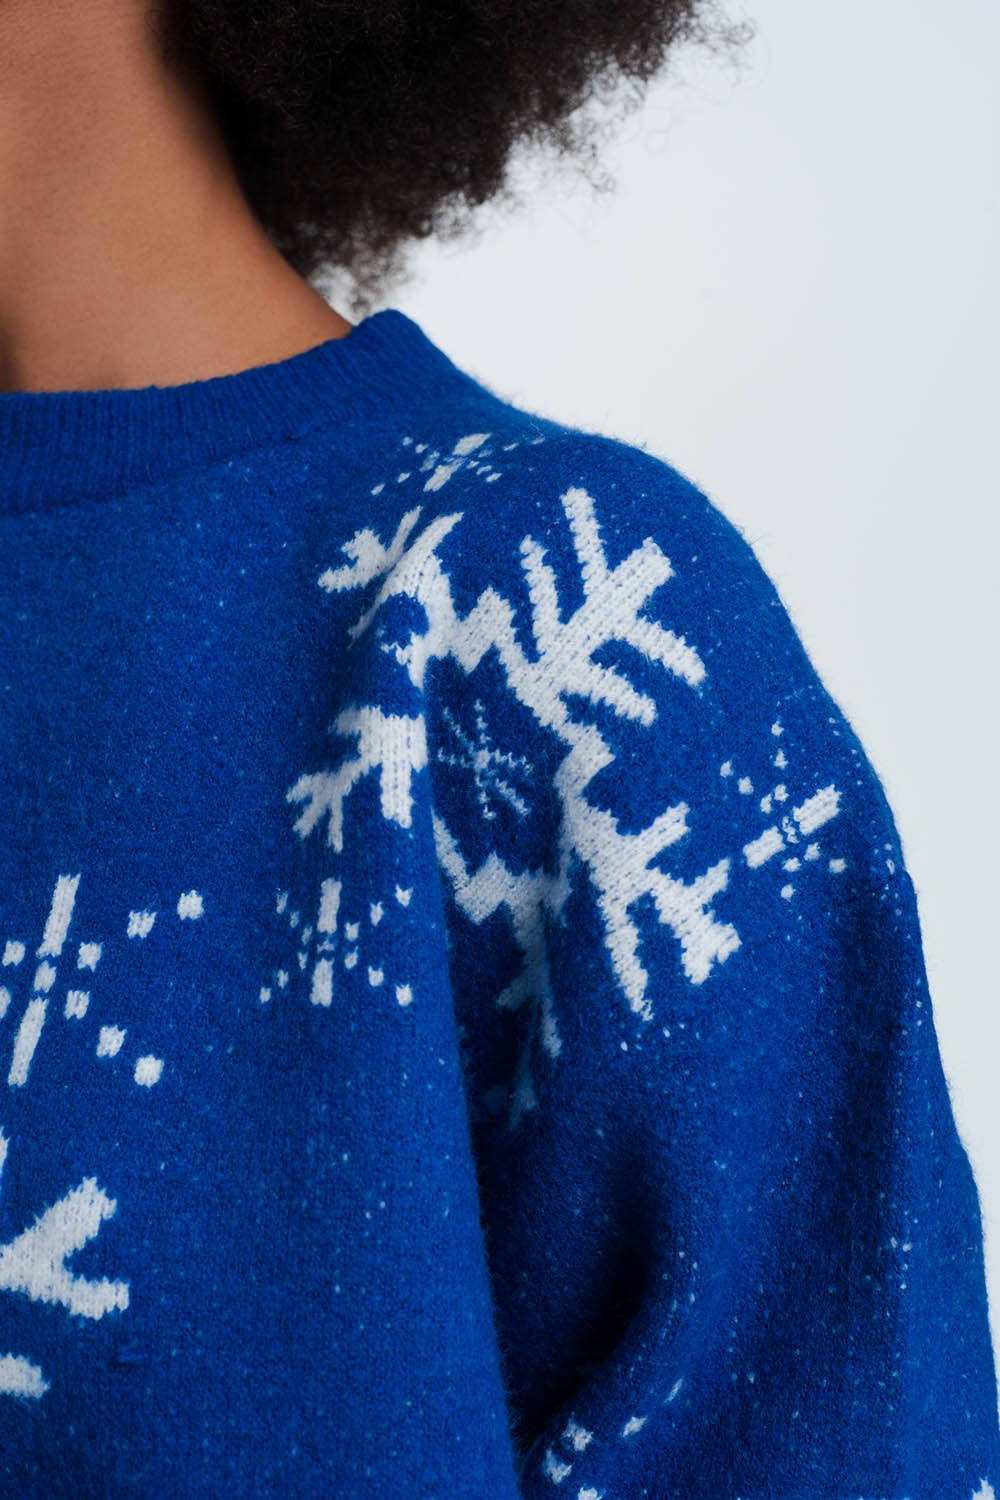 Maglione natalizio con fiocchi di neve in blu